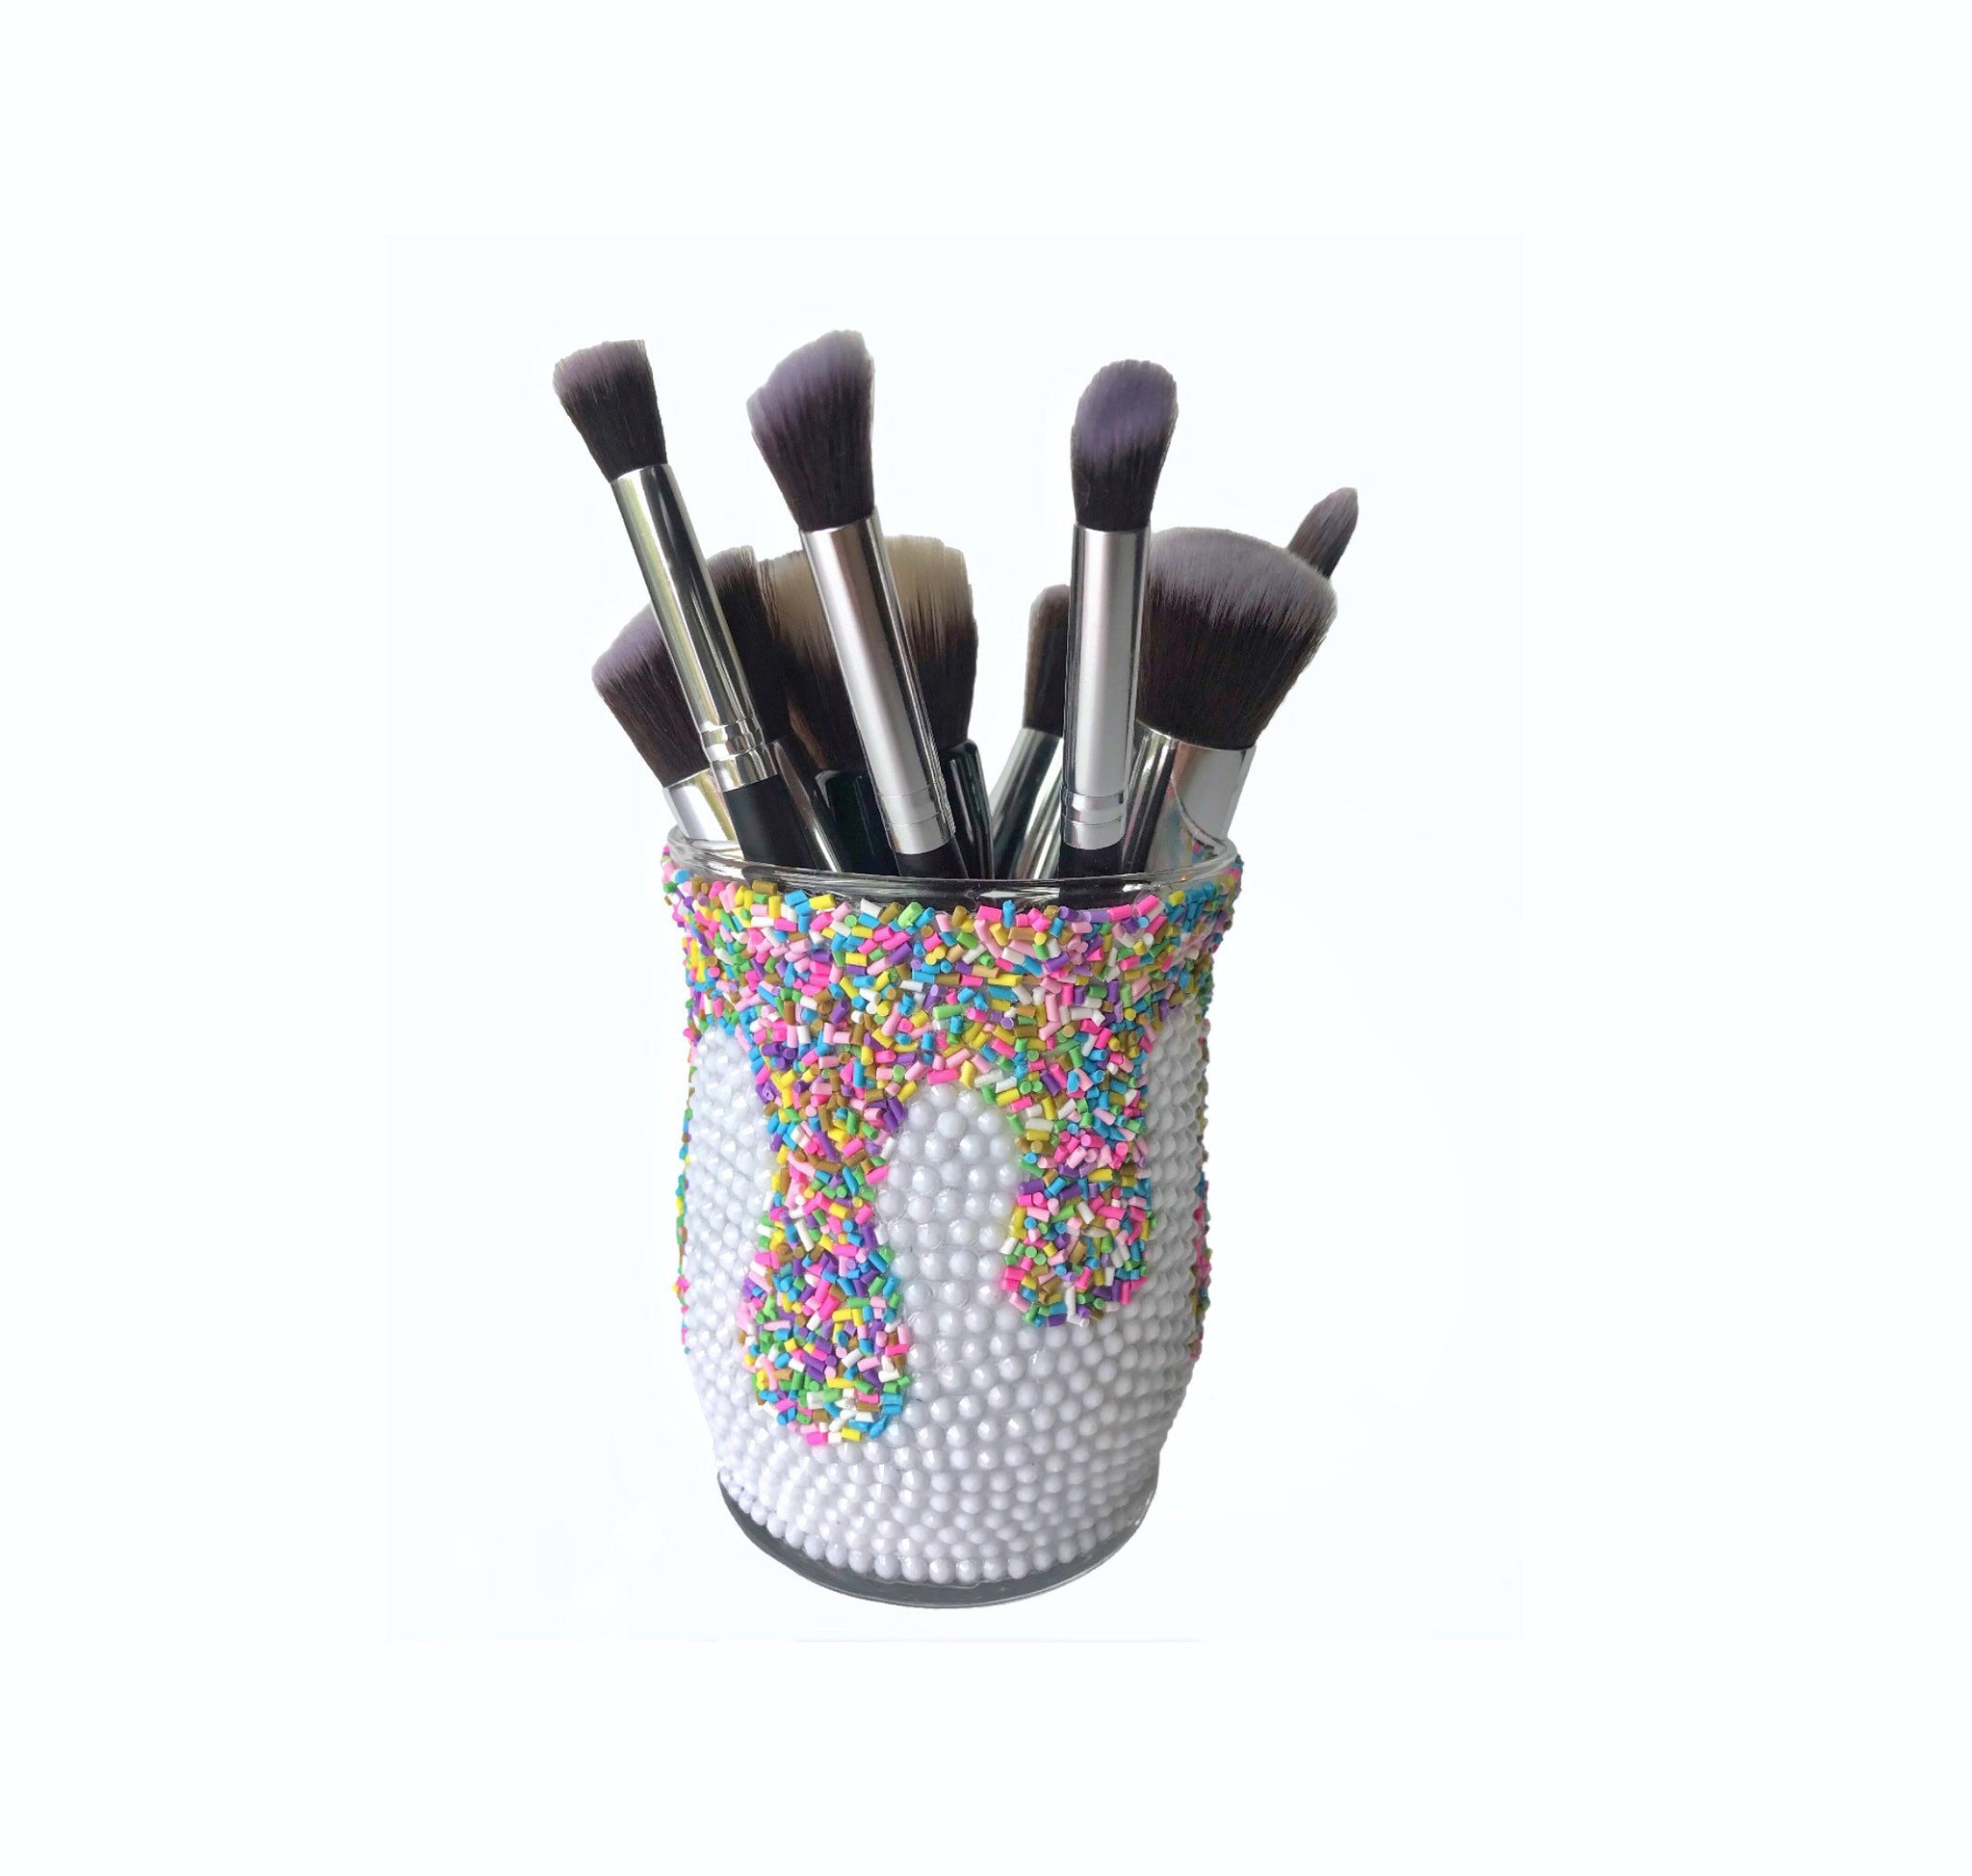 Sprinkles Drip Make up Brush Holder / Vanity Decor / Beauty Tool